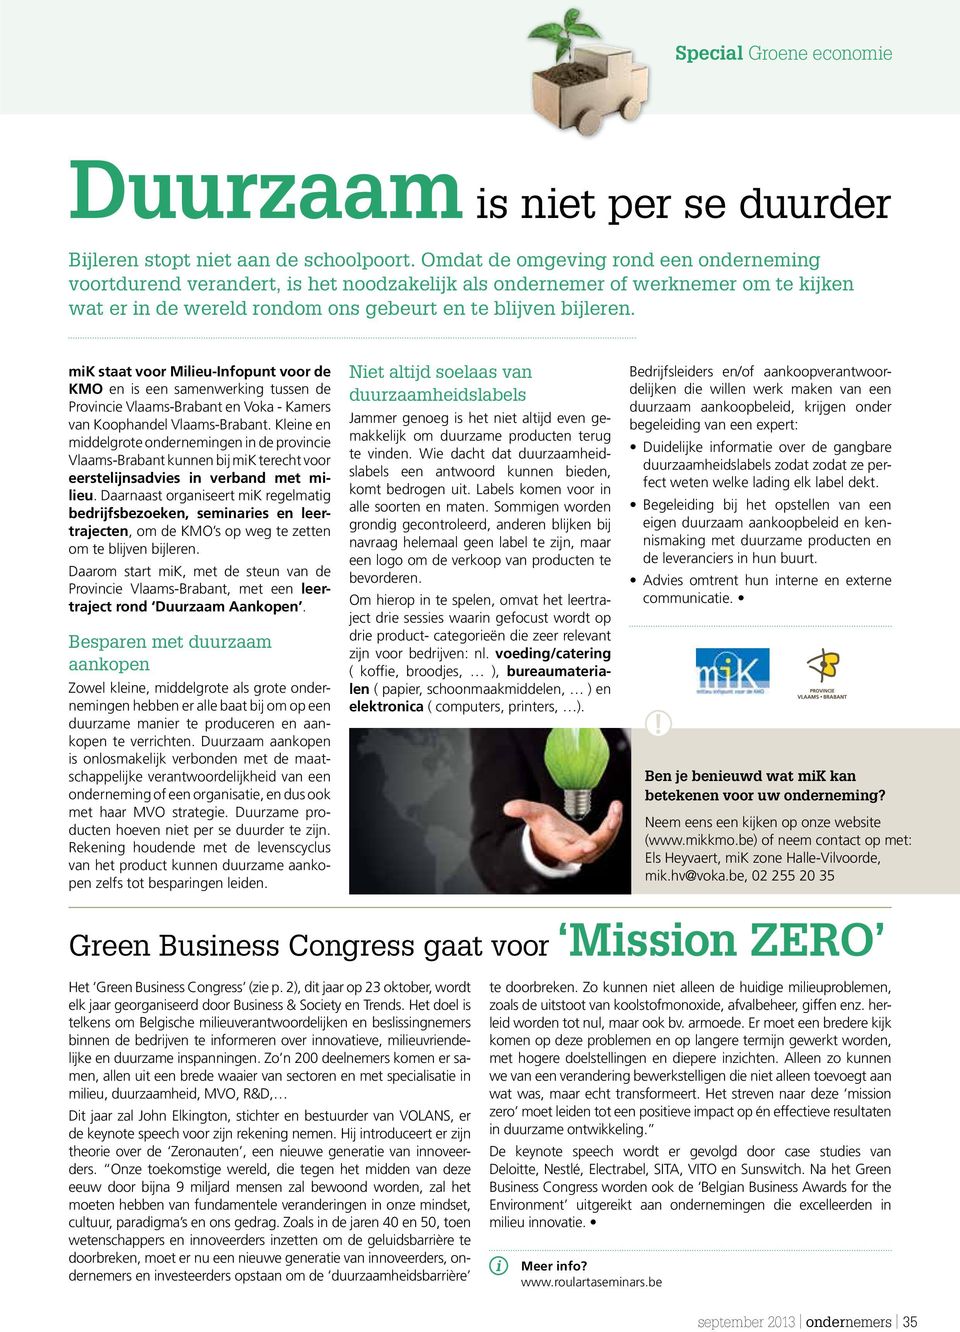 mik staat voor Milieu-Infopunt voor de KMO en is een samenwerking tussen de Provincie Vlaams-Brabant en Voka - Kamers van Koophandel Vlaams-Brabant.